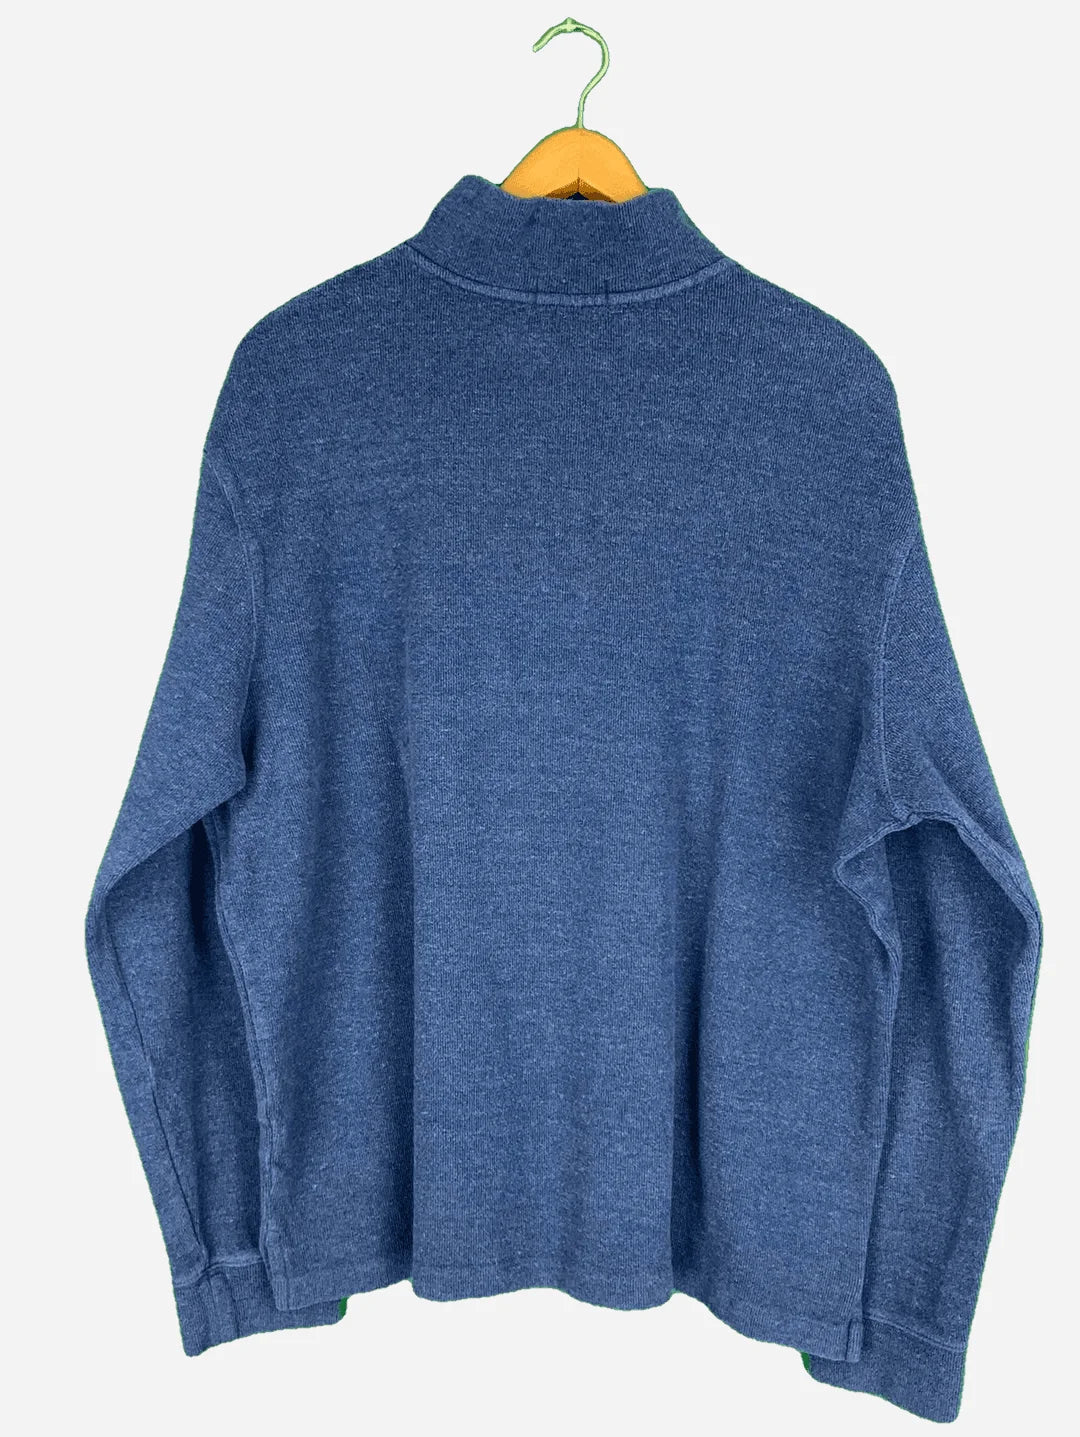 Ralph Lauren Halfzip Sweater (XL)